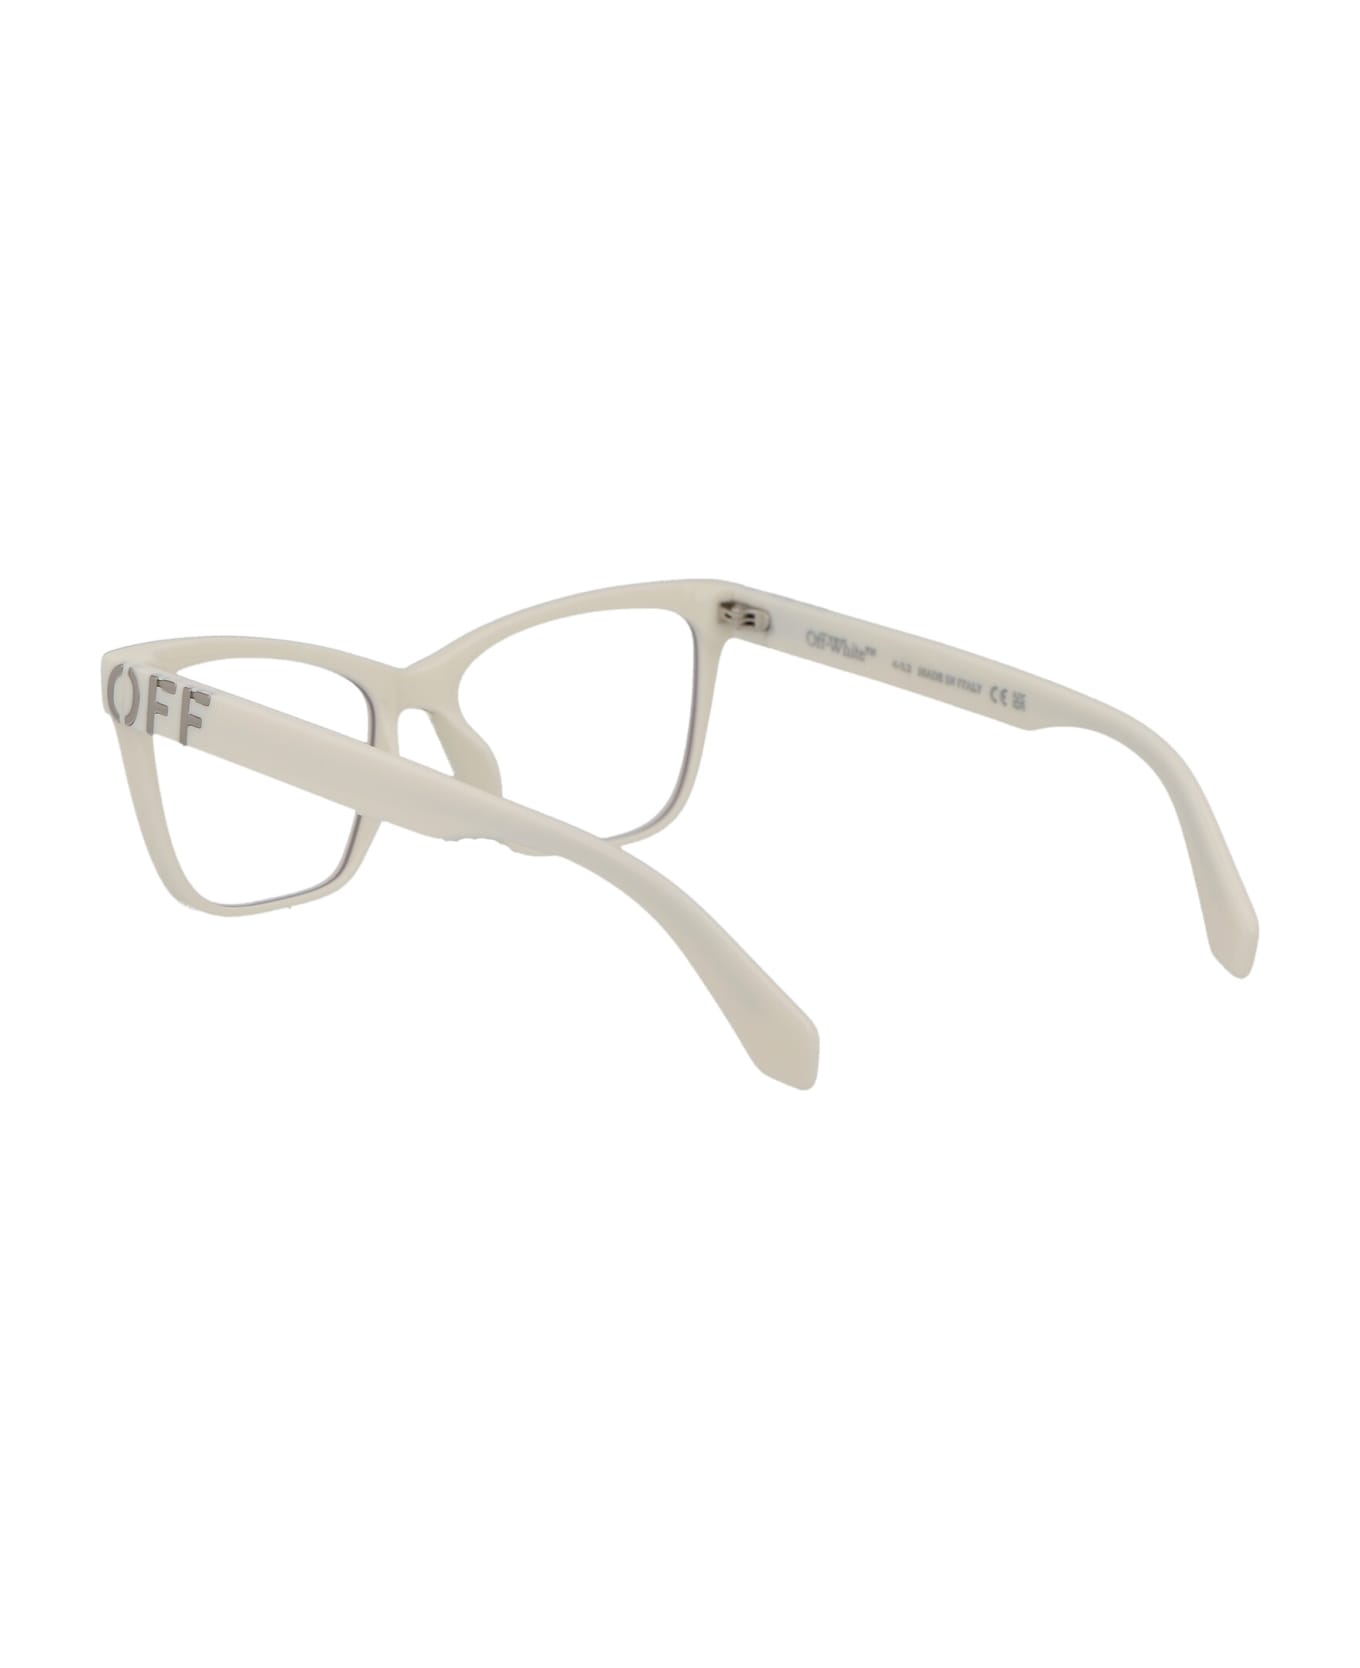 Off-White Optical Style 67 Glasses - 0100 WHITE アイウェア